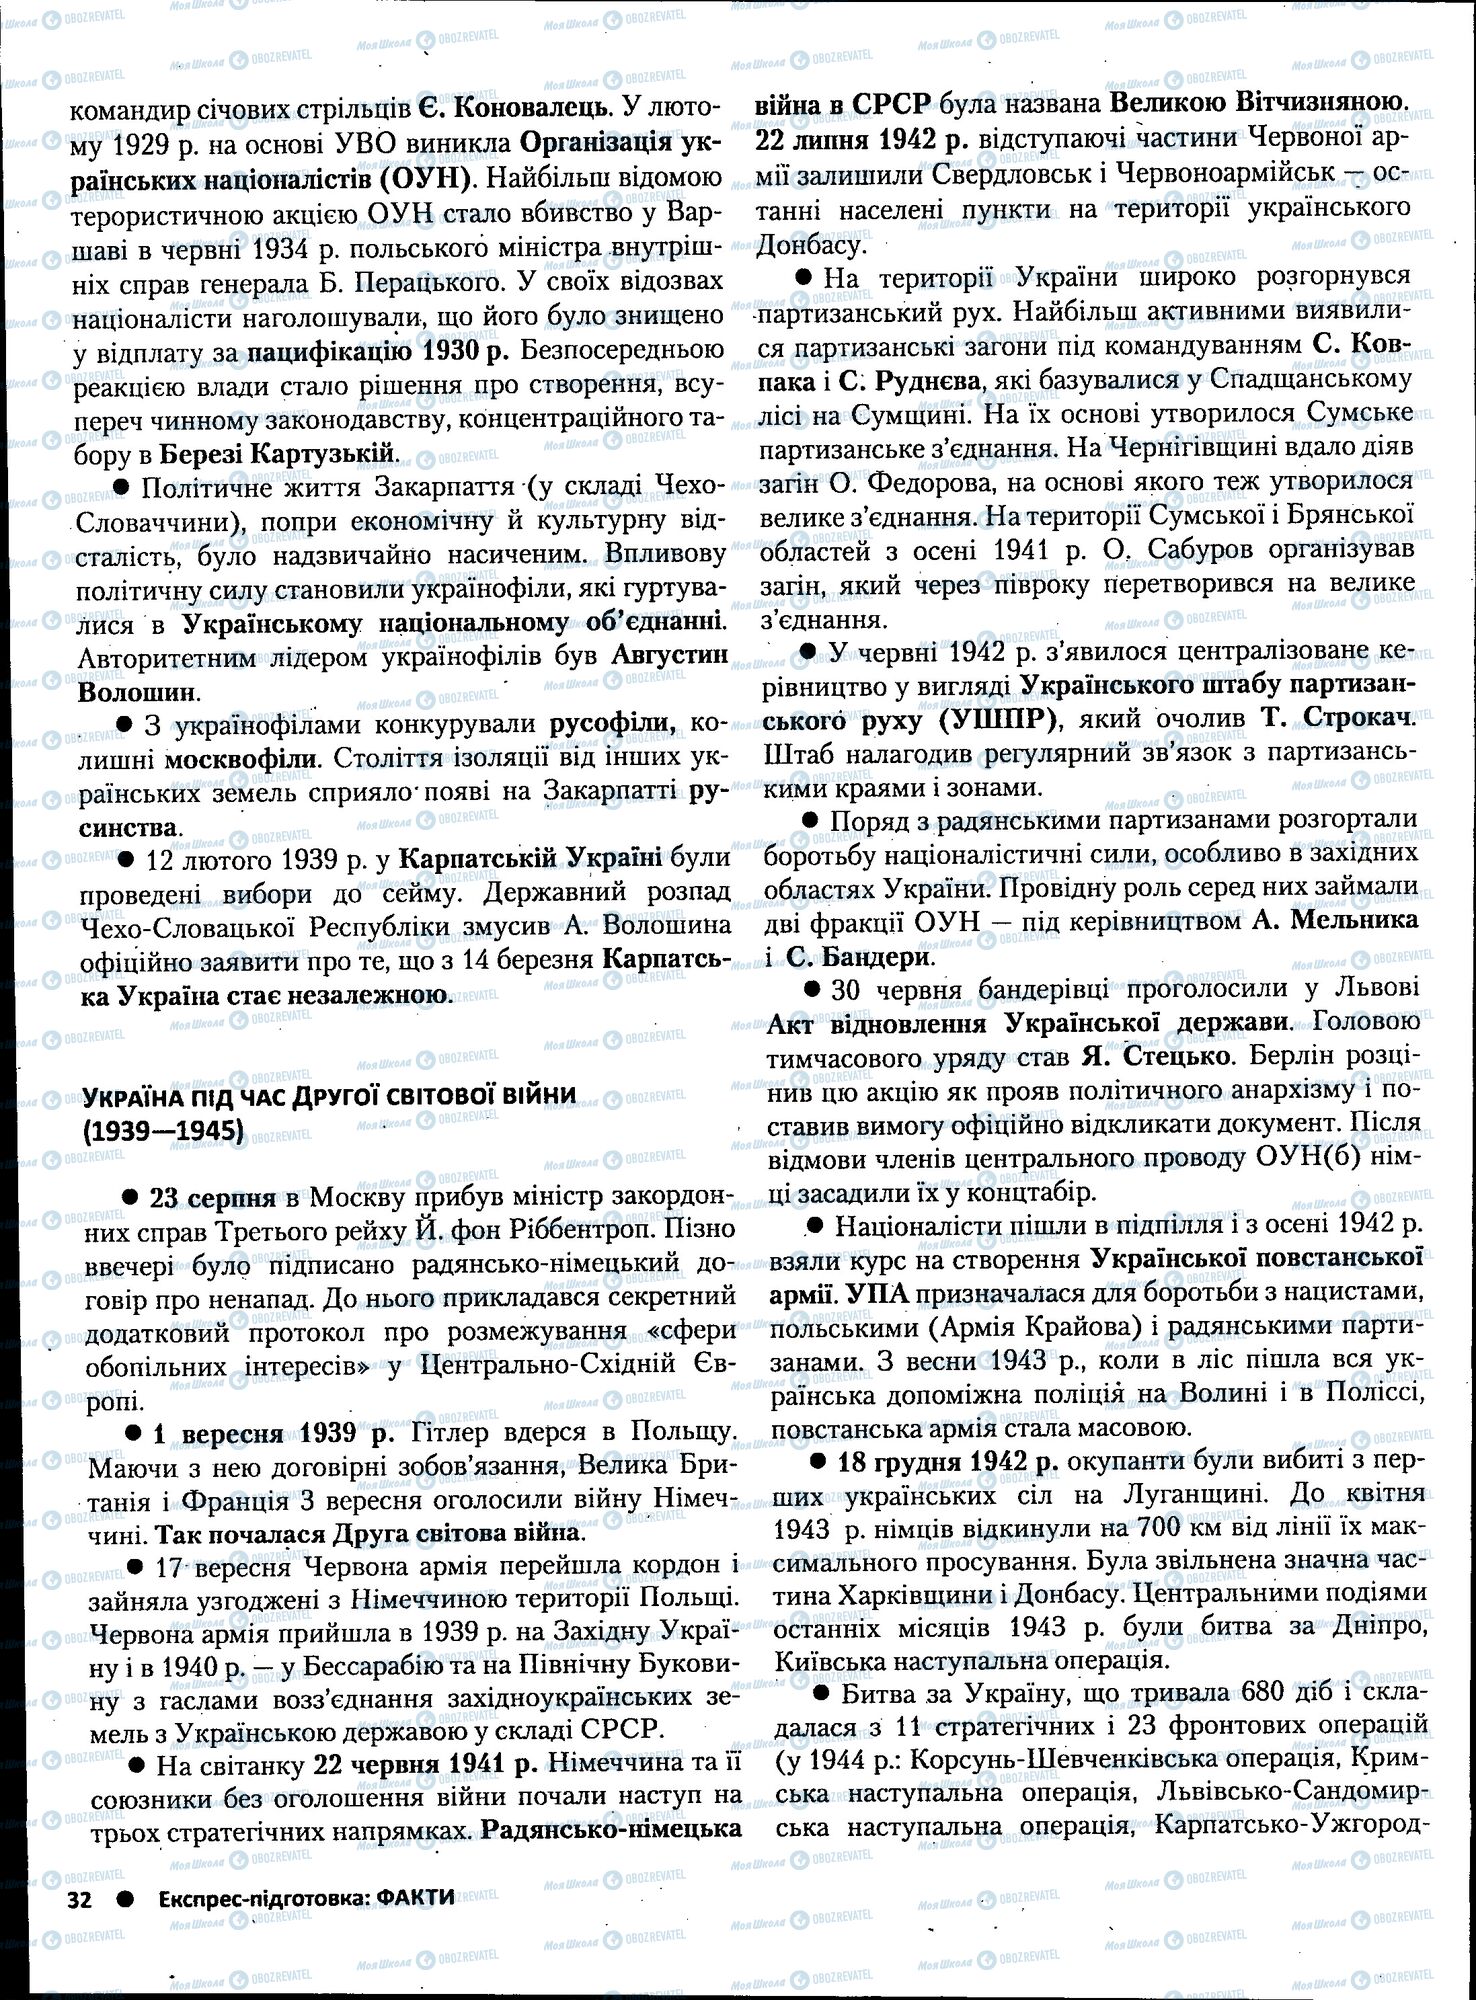 ЗНО История Украины 11 класс страница 032